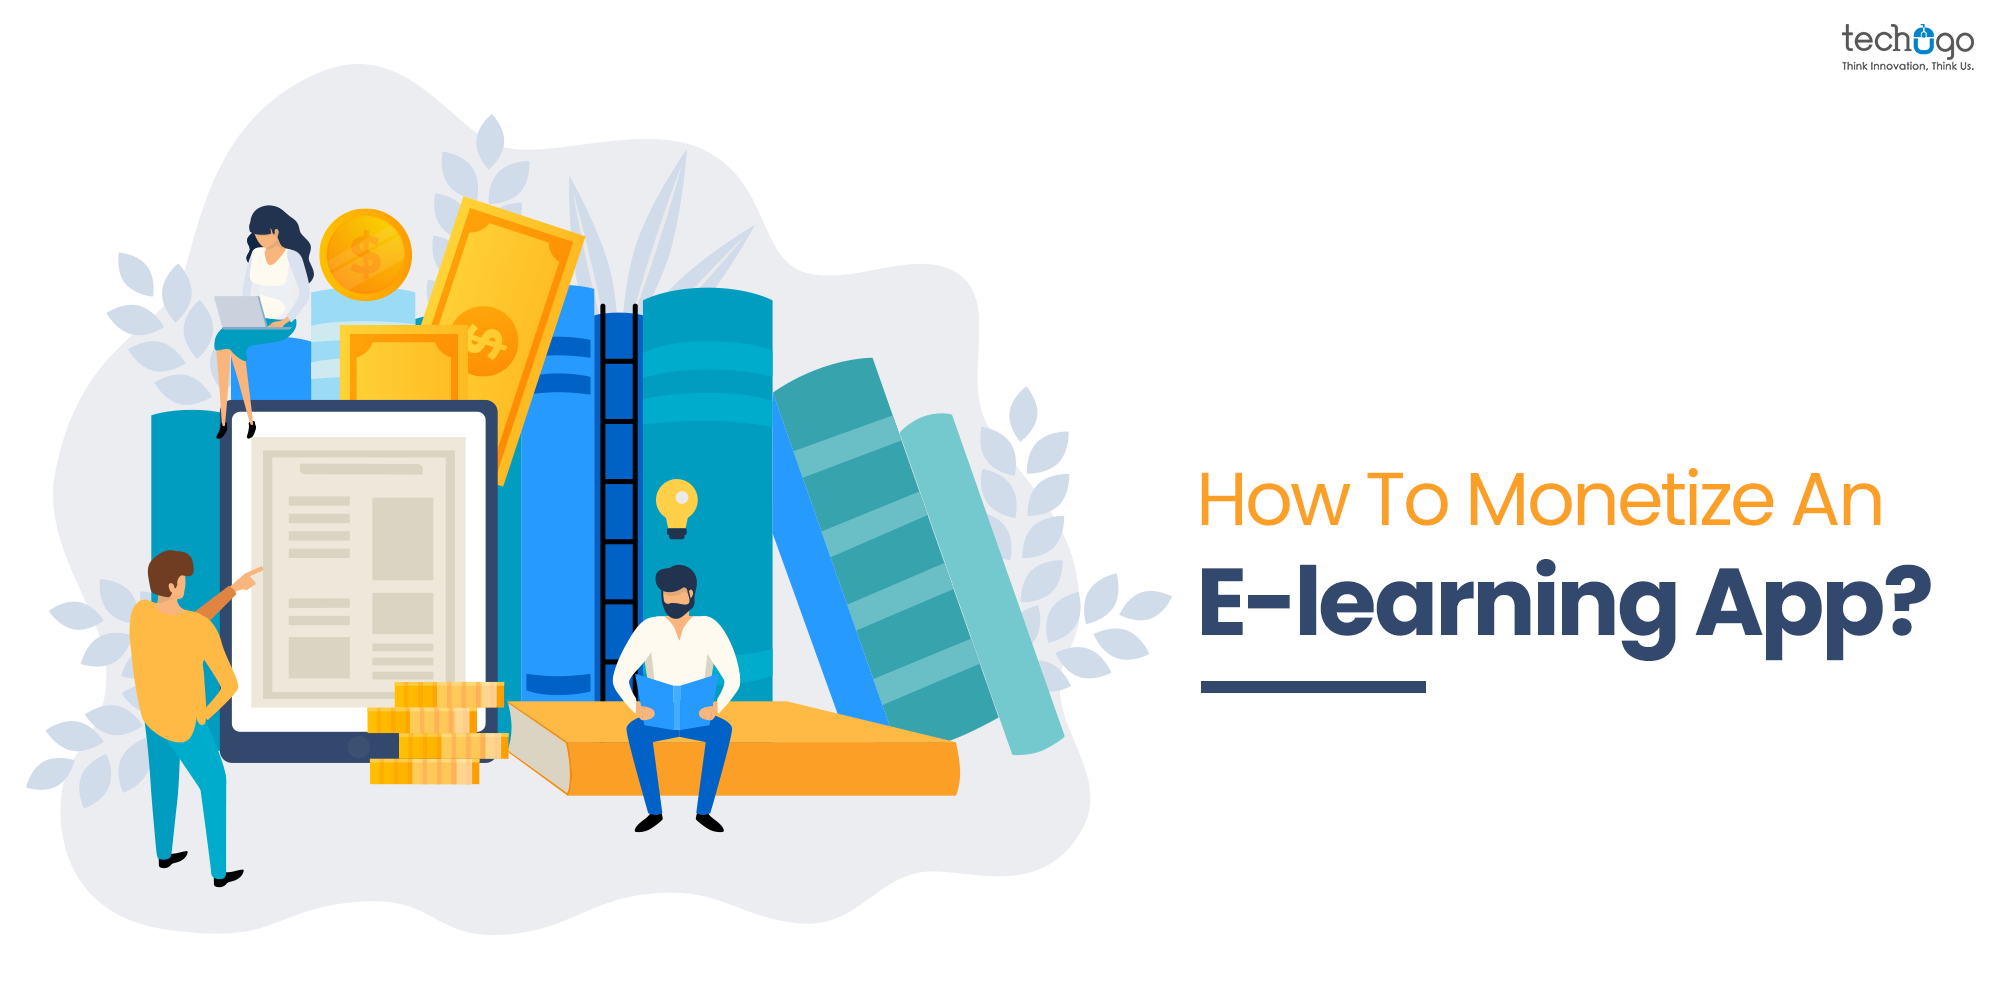 E-learning App